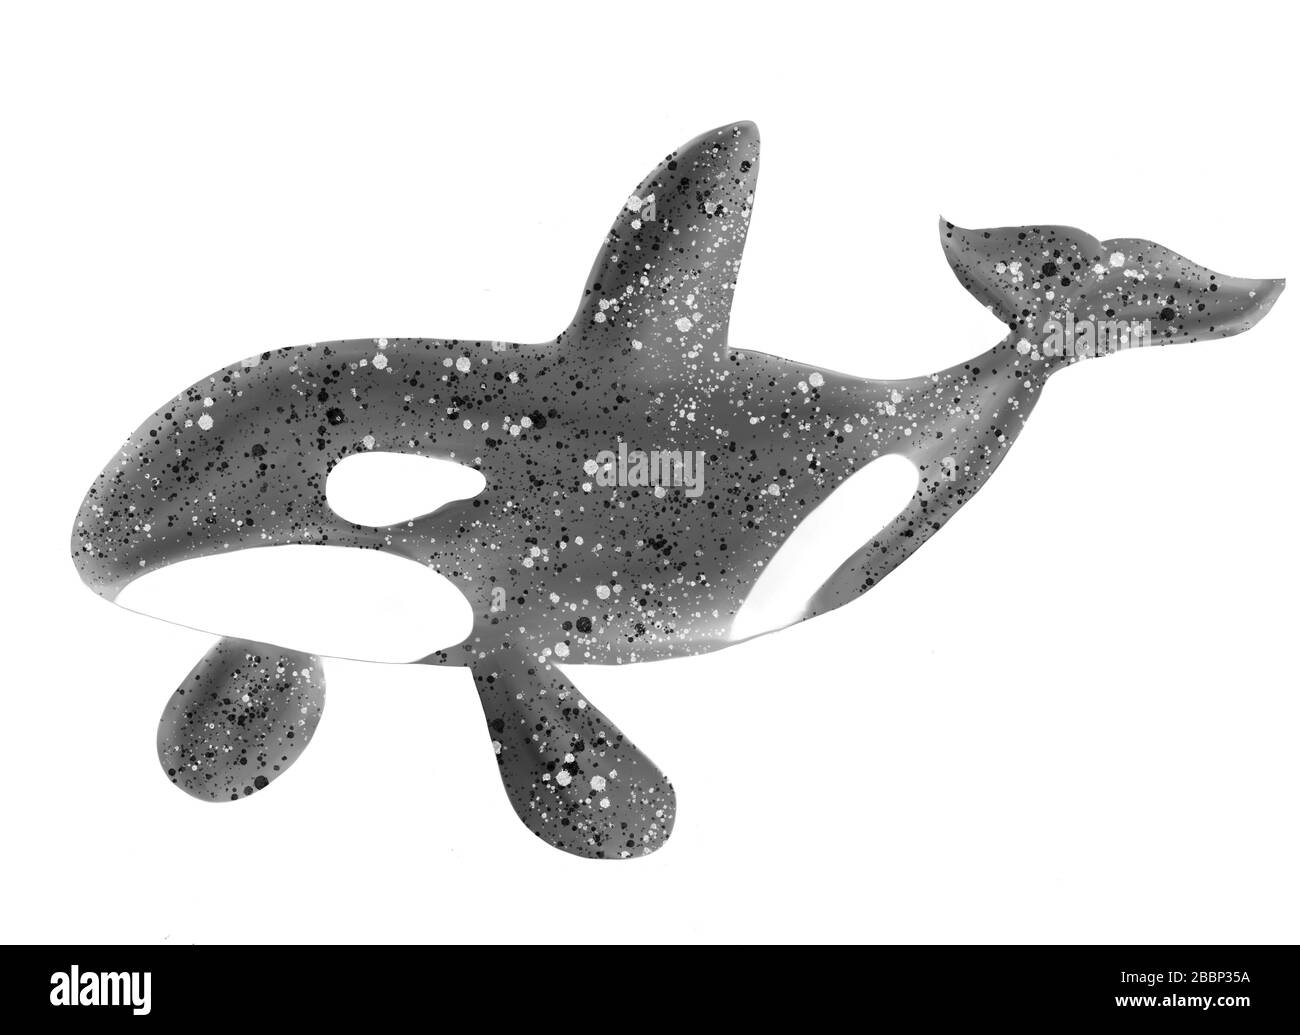 Illustration d'aquarelle numérique isolée. Orque d'orque, grampus sur fond blanc. Image de stock. Banque D'Images